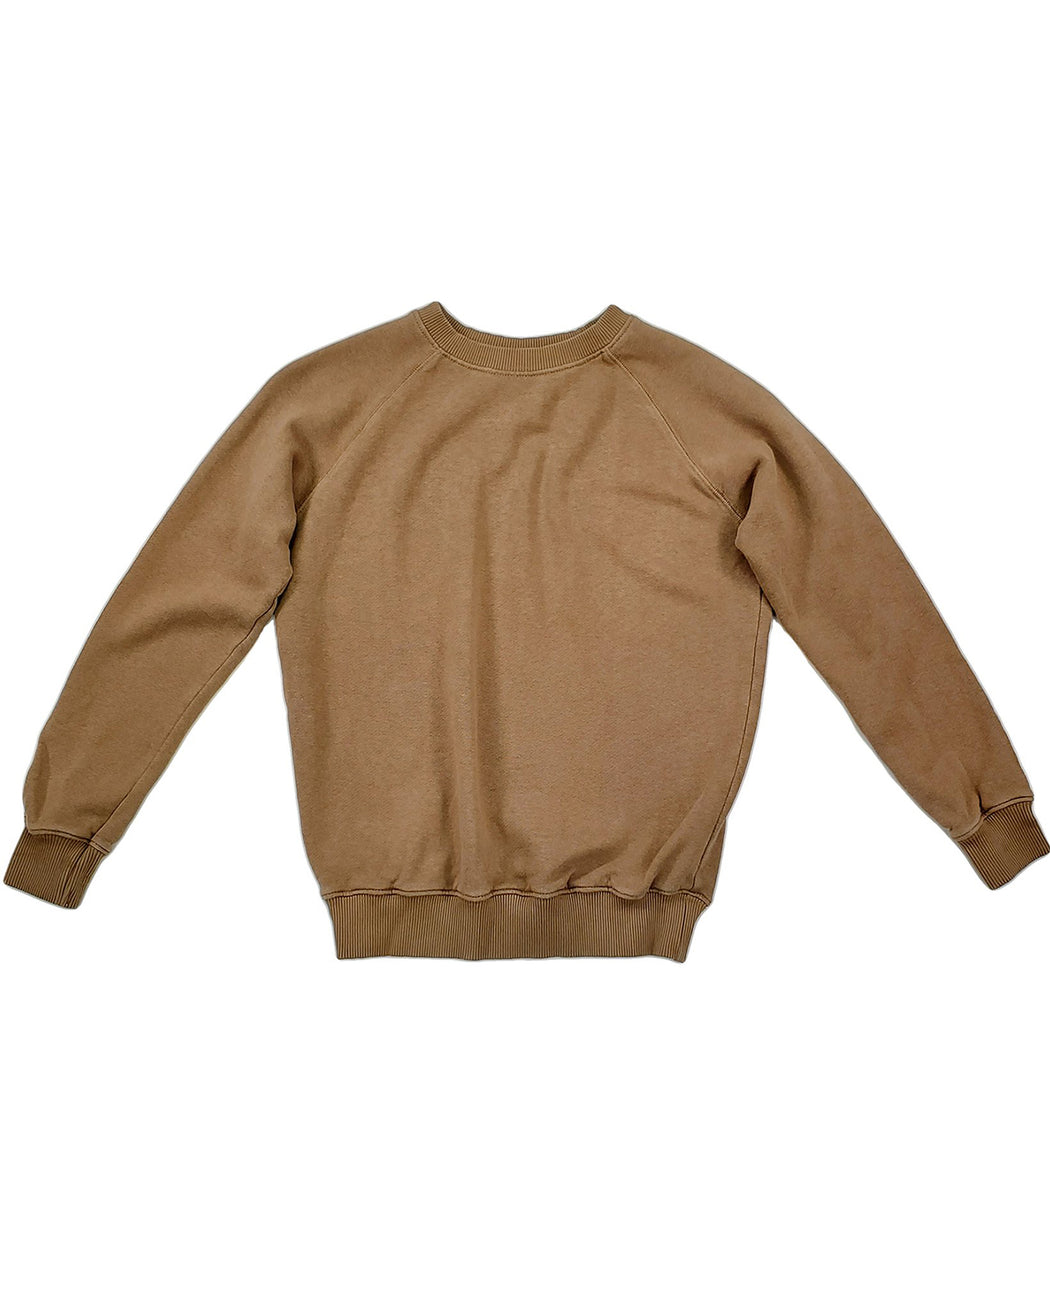 Grom Kid's Sweatshirt – Assorted Colors